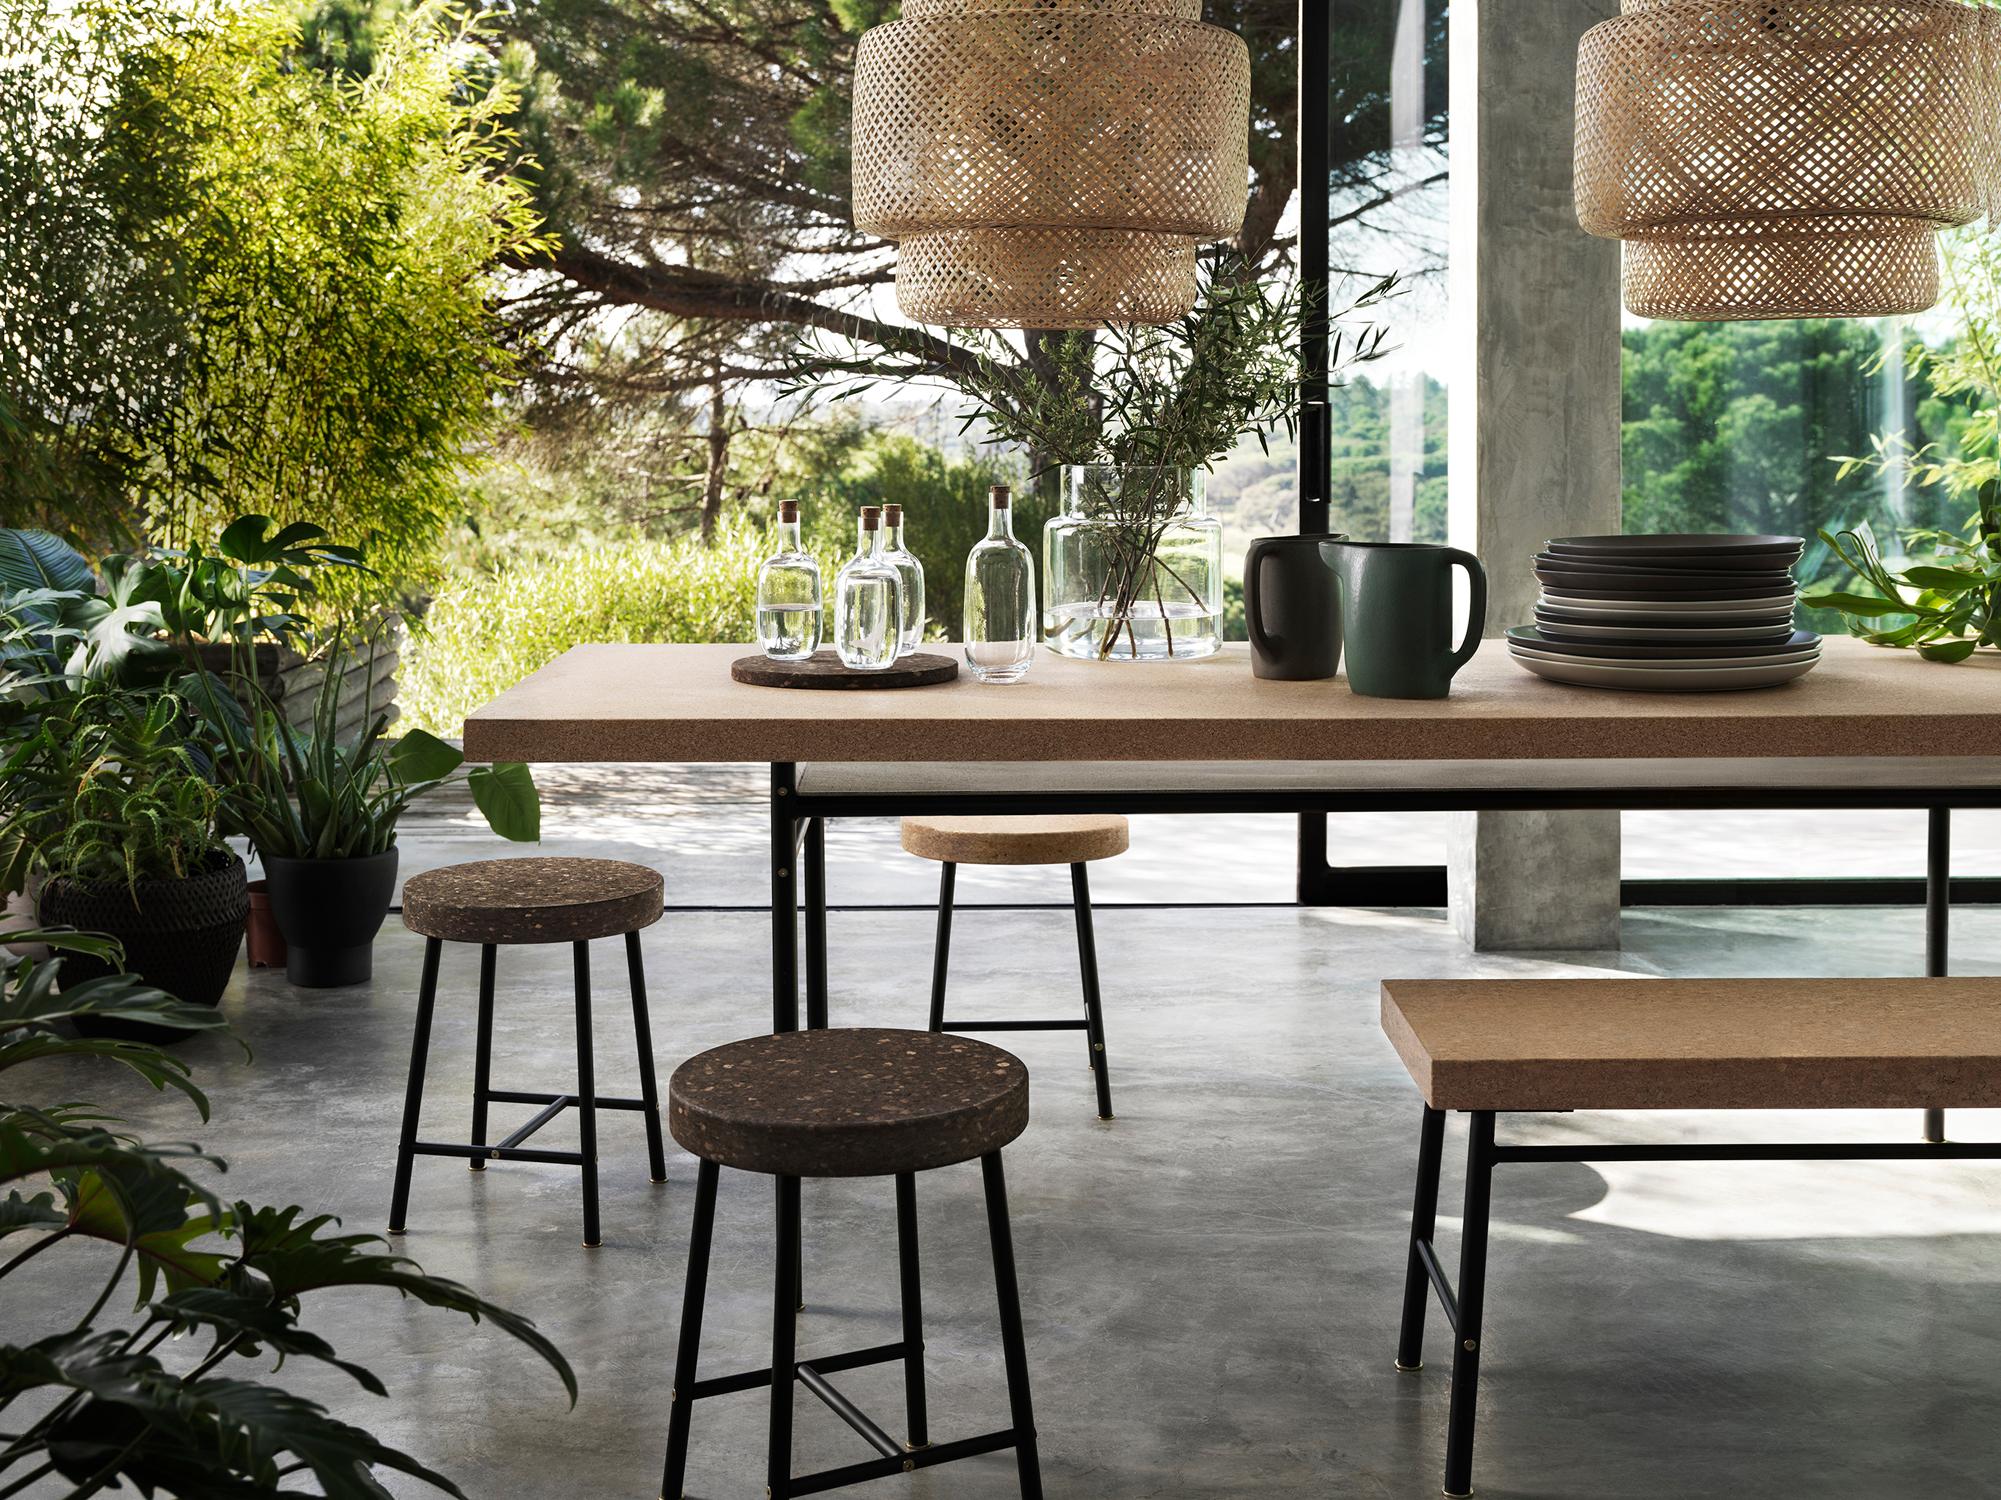 Möbel aus Kork #esstisch #ikea #pendelleuchte #kork ©Inter IKEA Systems B.V.